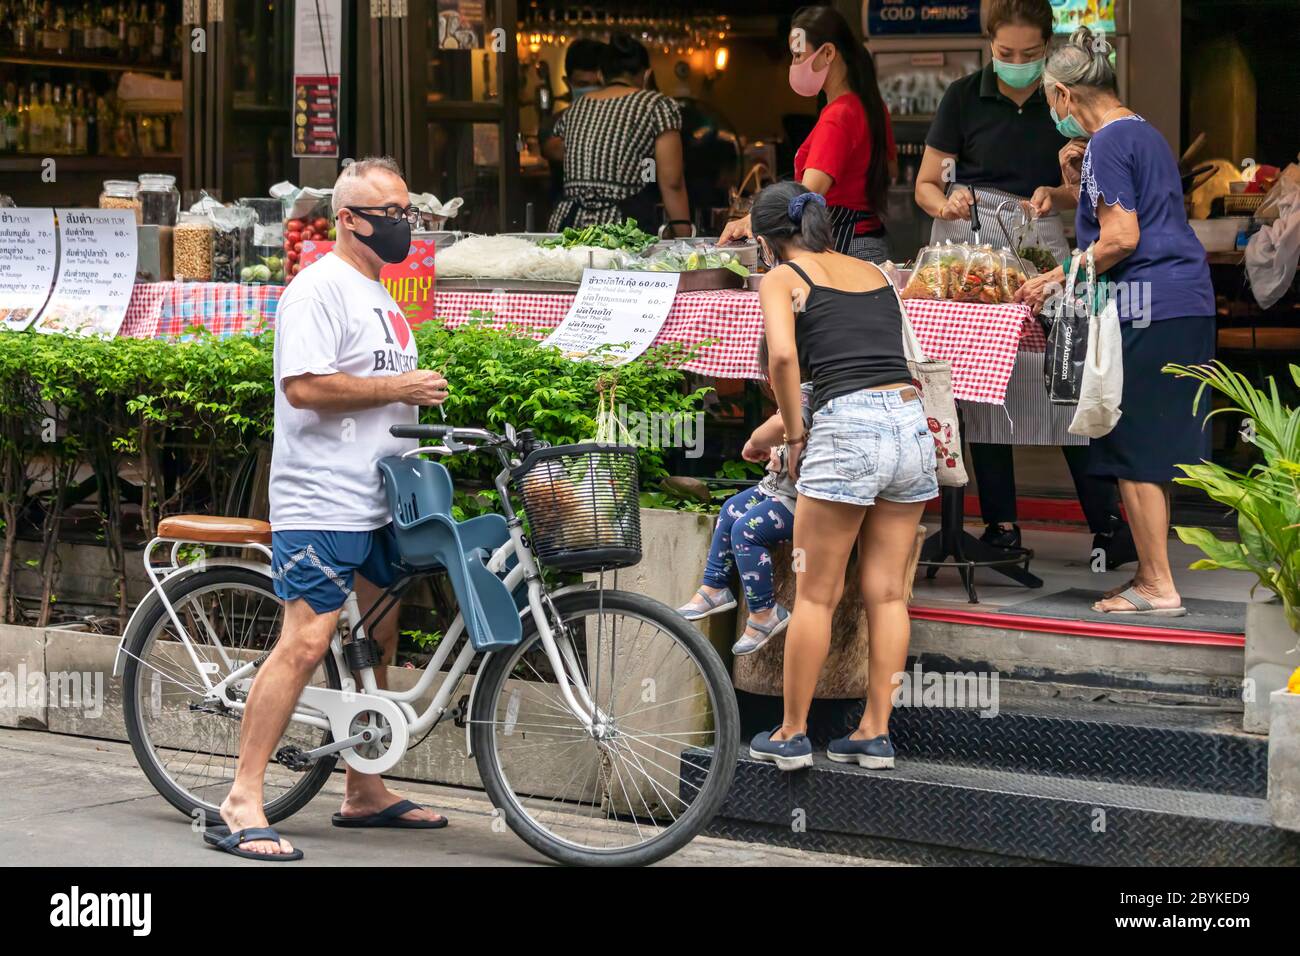 Famille avec masque facial et vélo à emporter au stand de nourriture pendant la pandémie de Covid, Bangkok, Thaïlande Banque D'Images